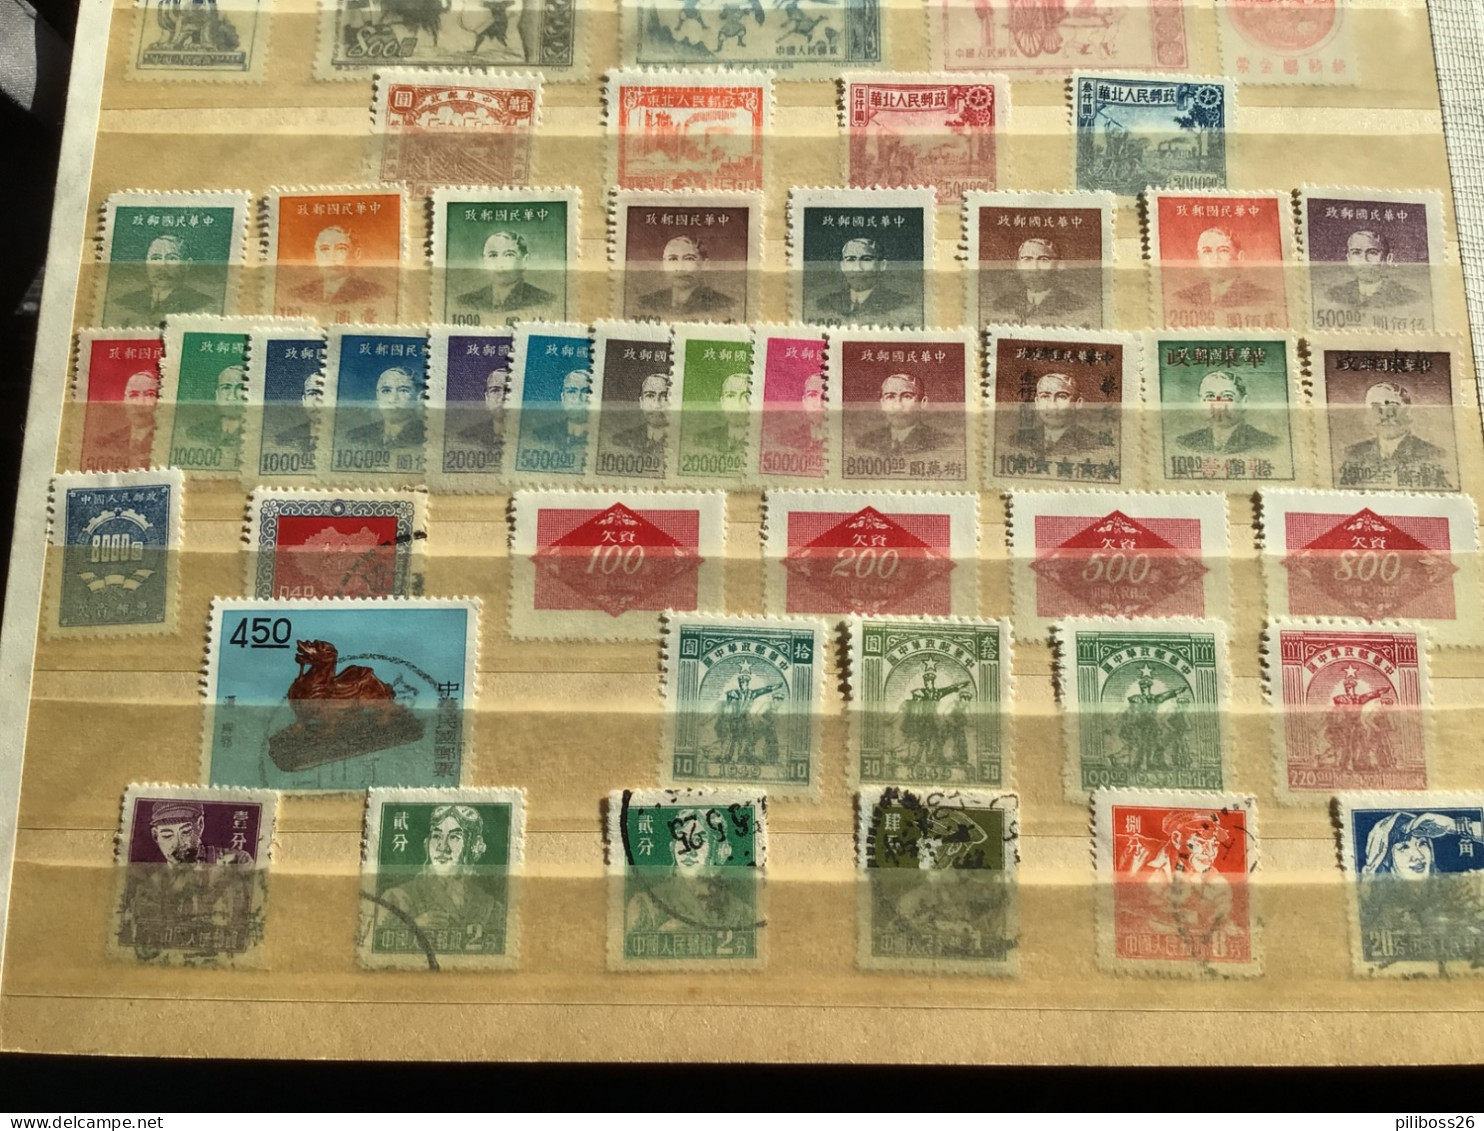 Lot de timbre Chine , collection à trier neufs et oblitérés